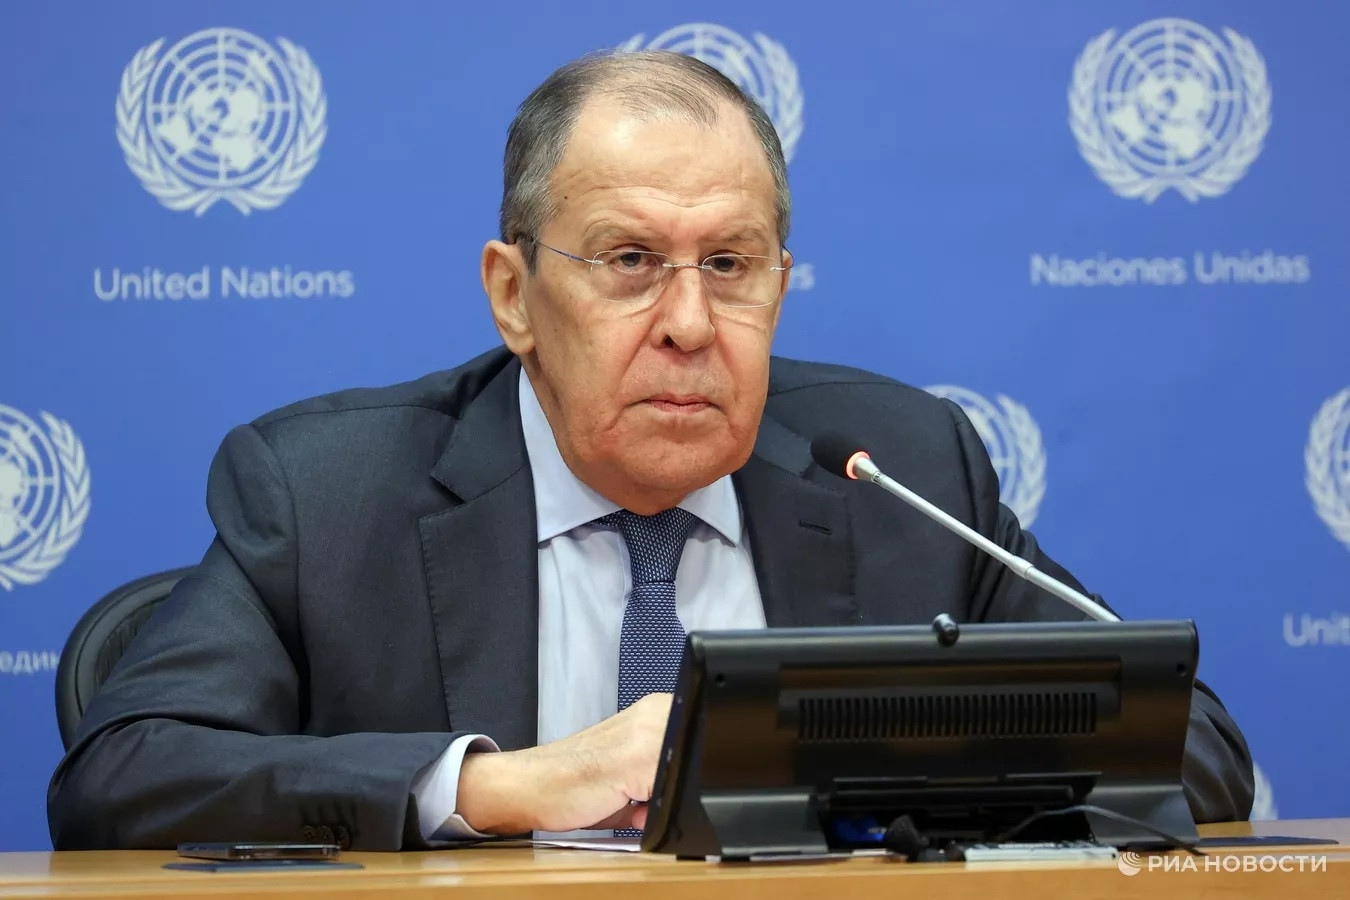 Ngoại trưởng Nga Lavrov cảnh báo nguy cơ xung đột toàn cầu ngày càng gia tăng